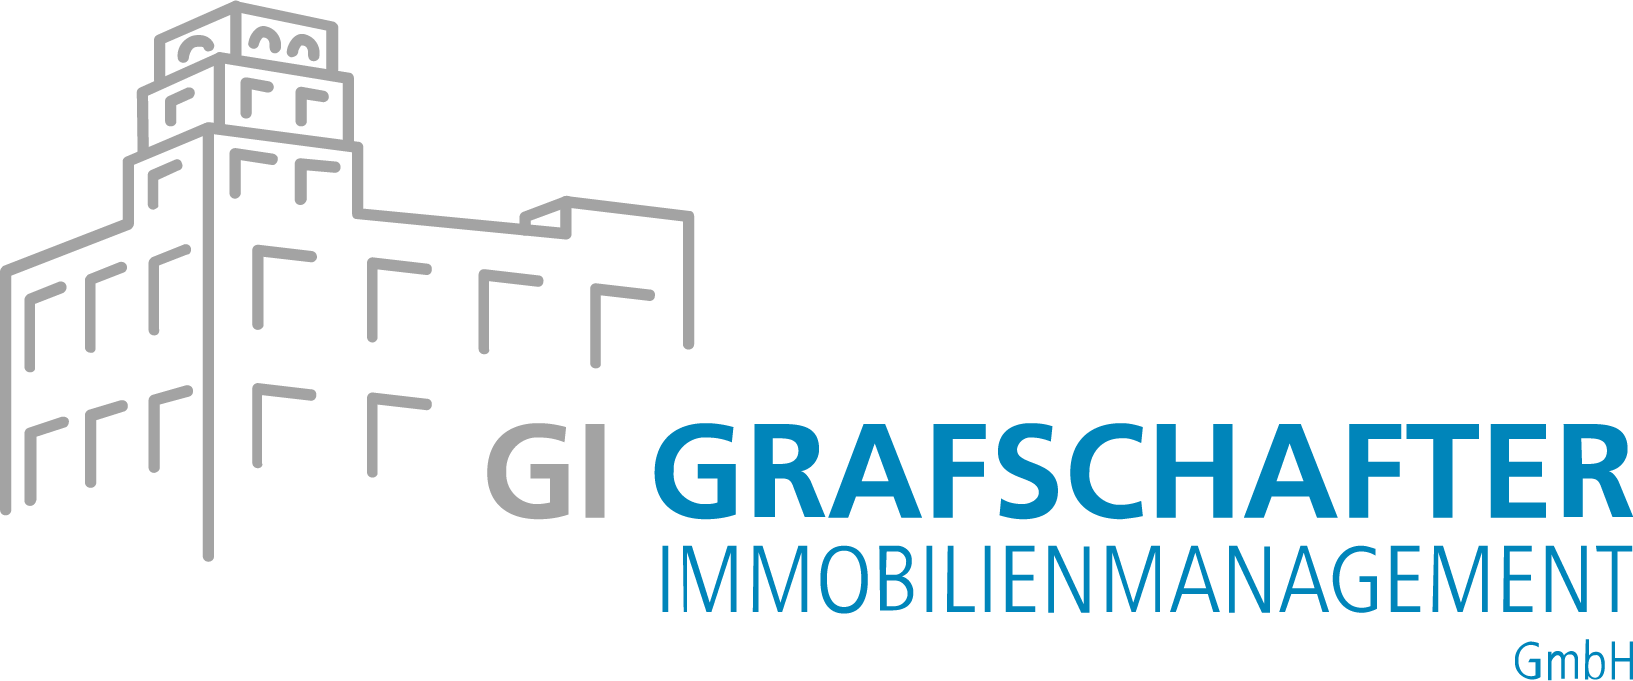 GI Grafschafter Immobilienmanagement GmbH